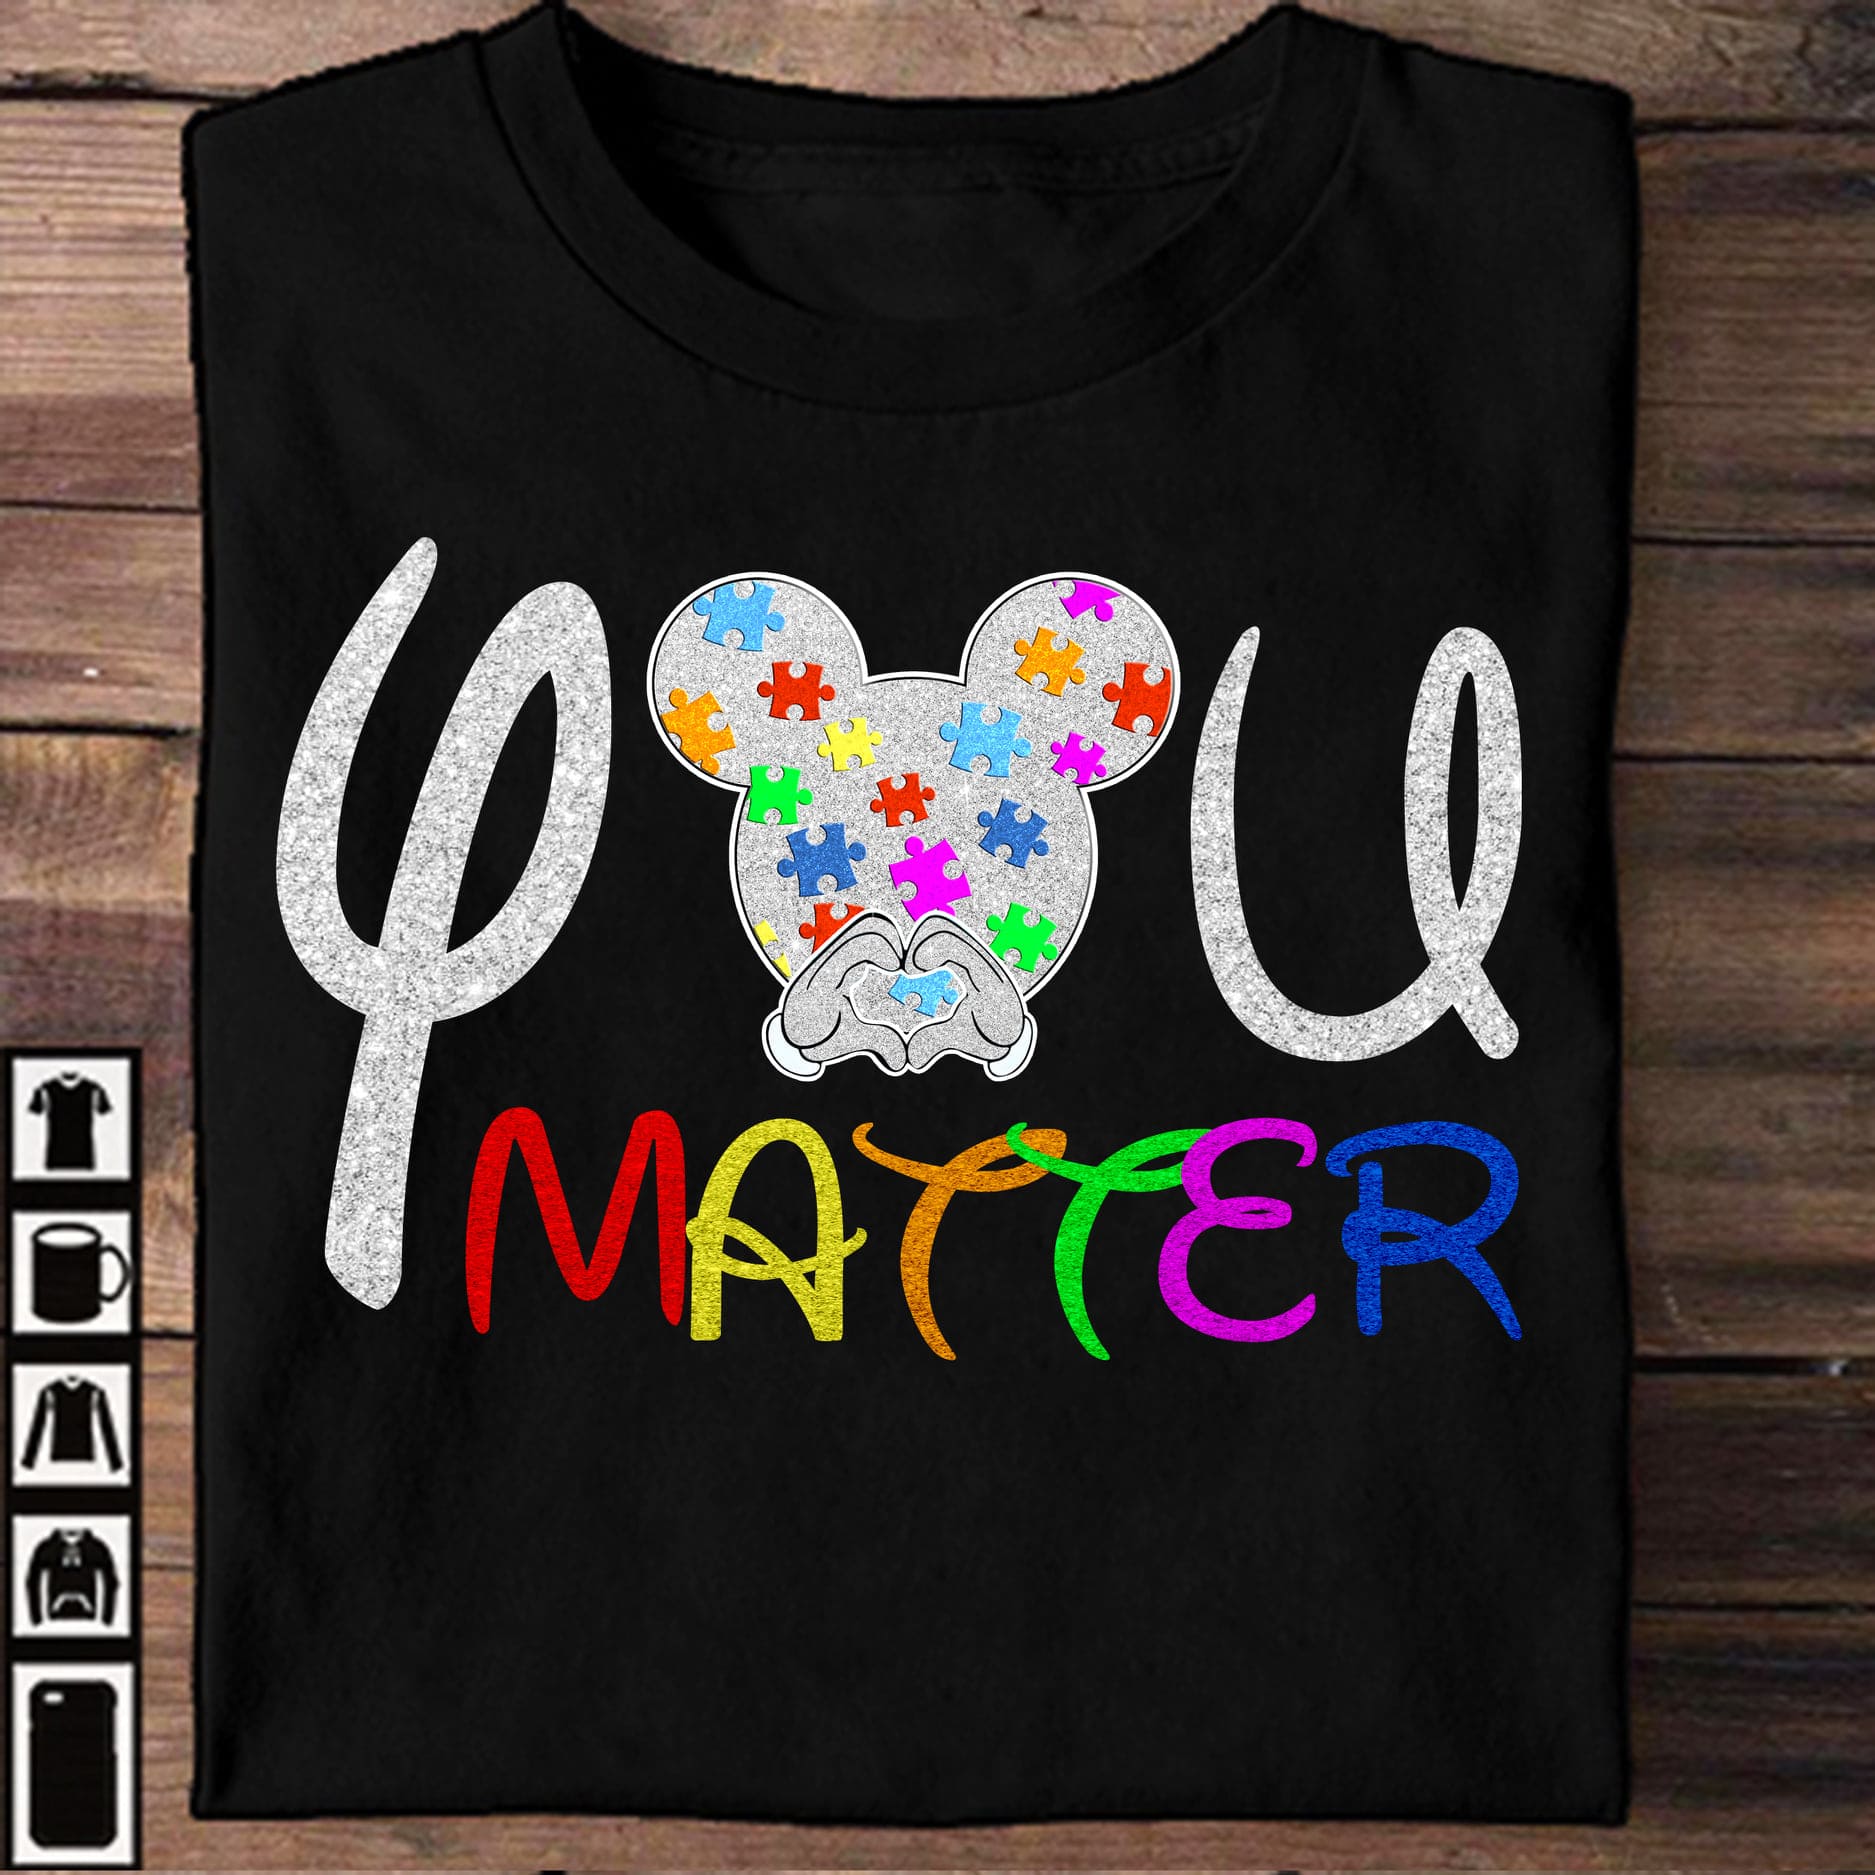 You matter - Your life matter, autism awareness T-shirt